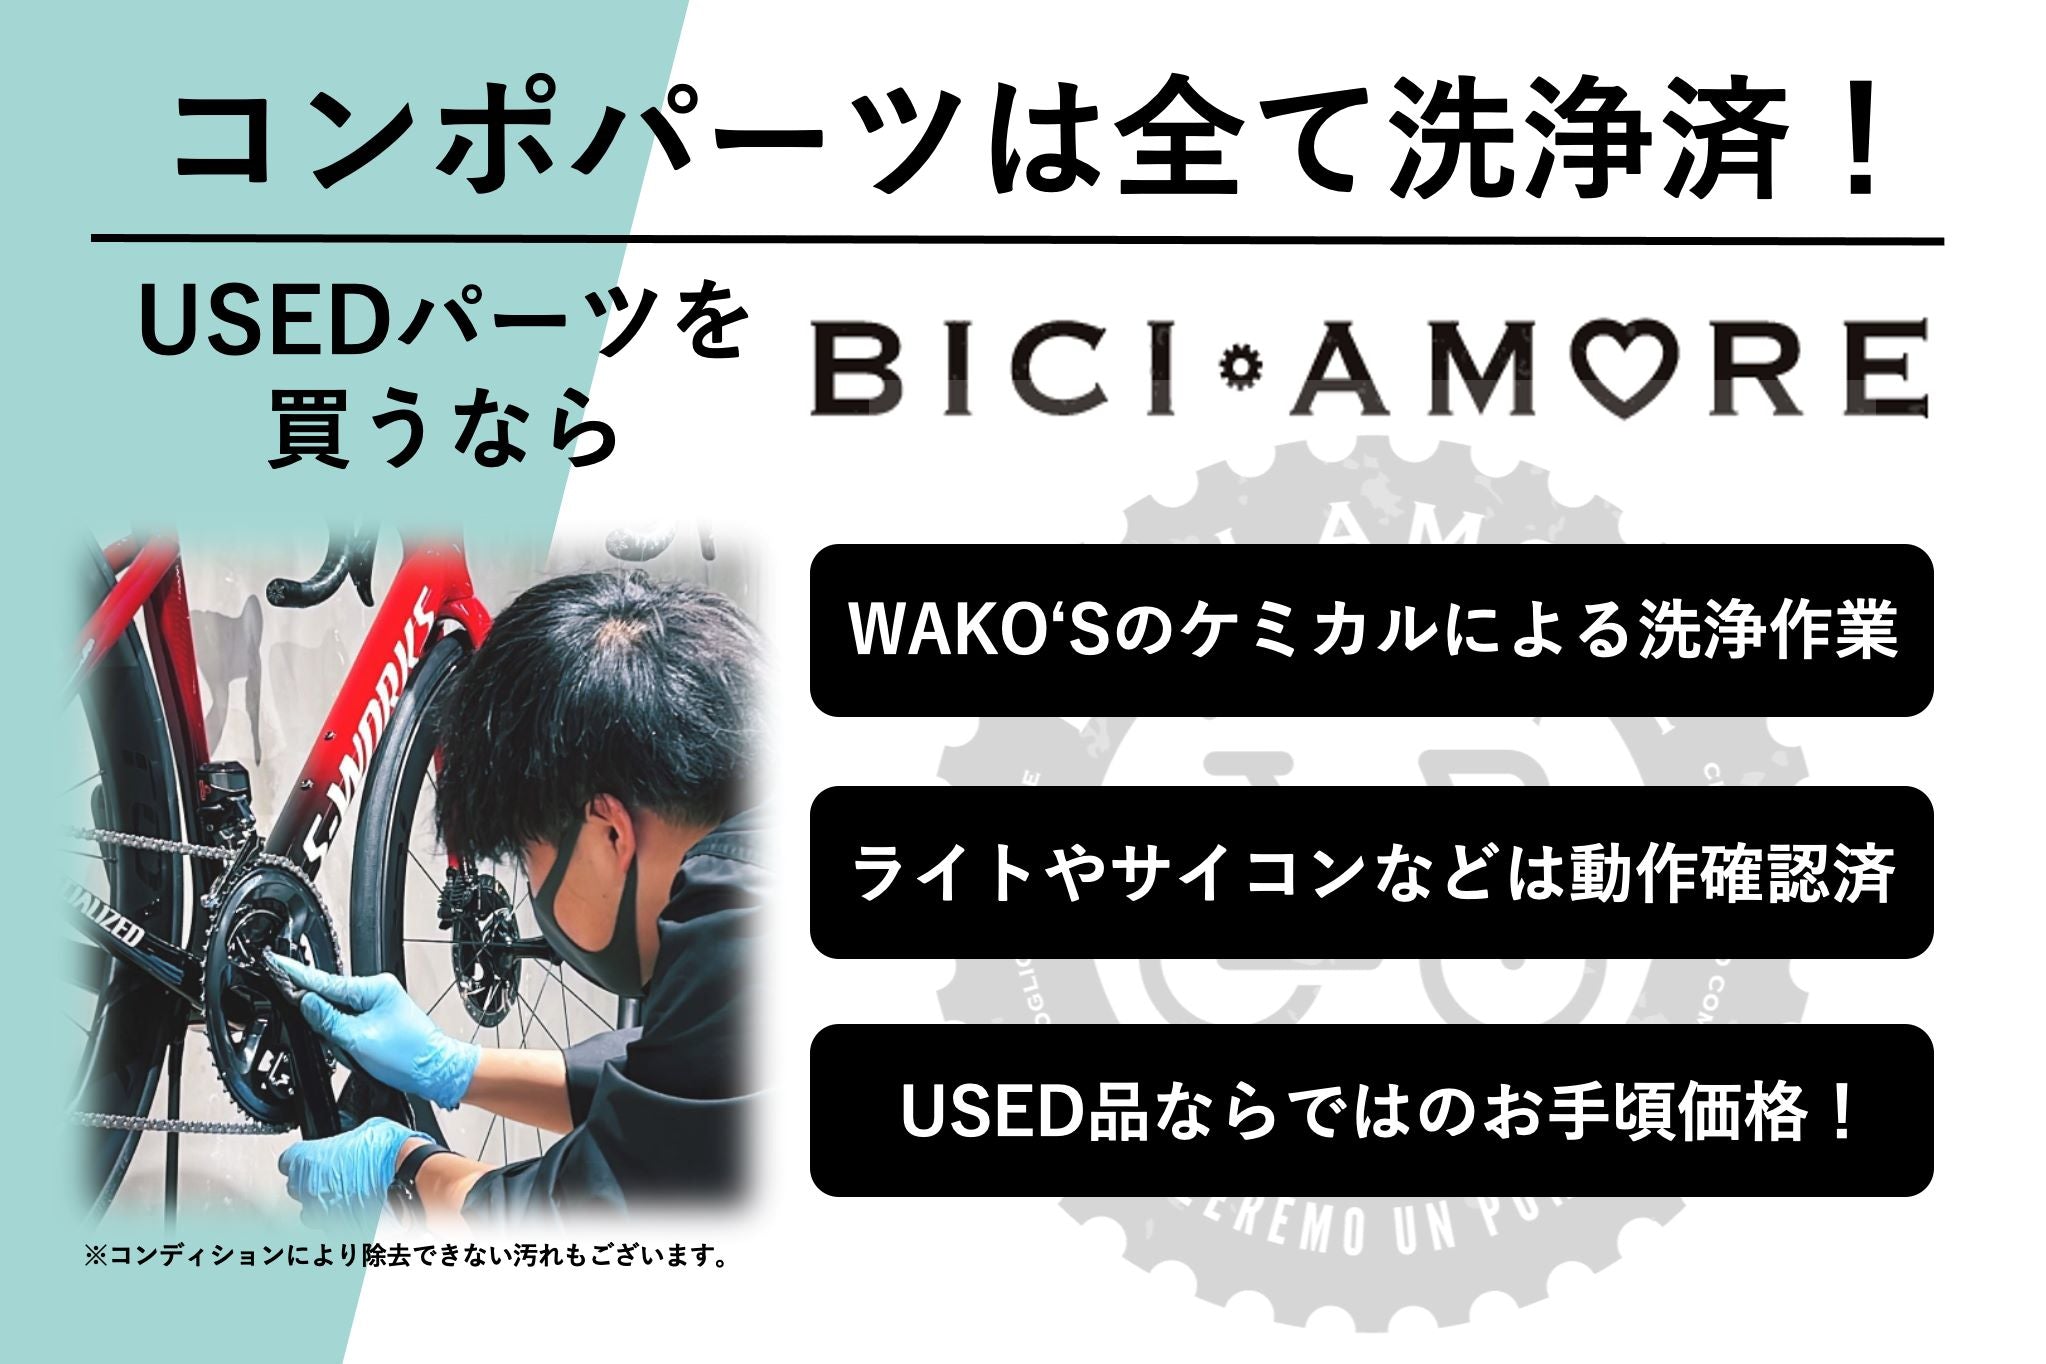 HH626 シマノ SHIMANO デュラエース DURA-ACE FC-7400 クランク 170mm ※腐食